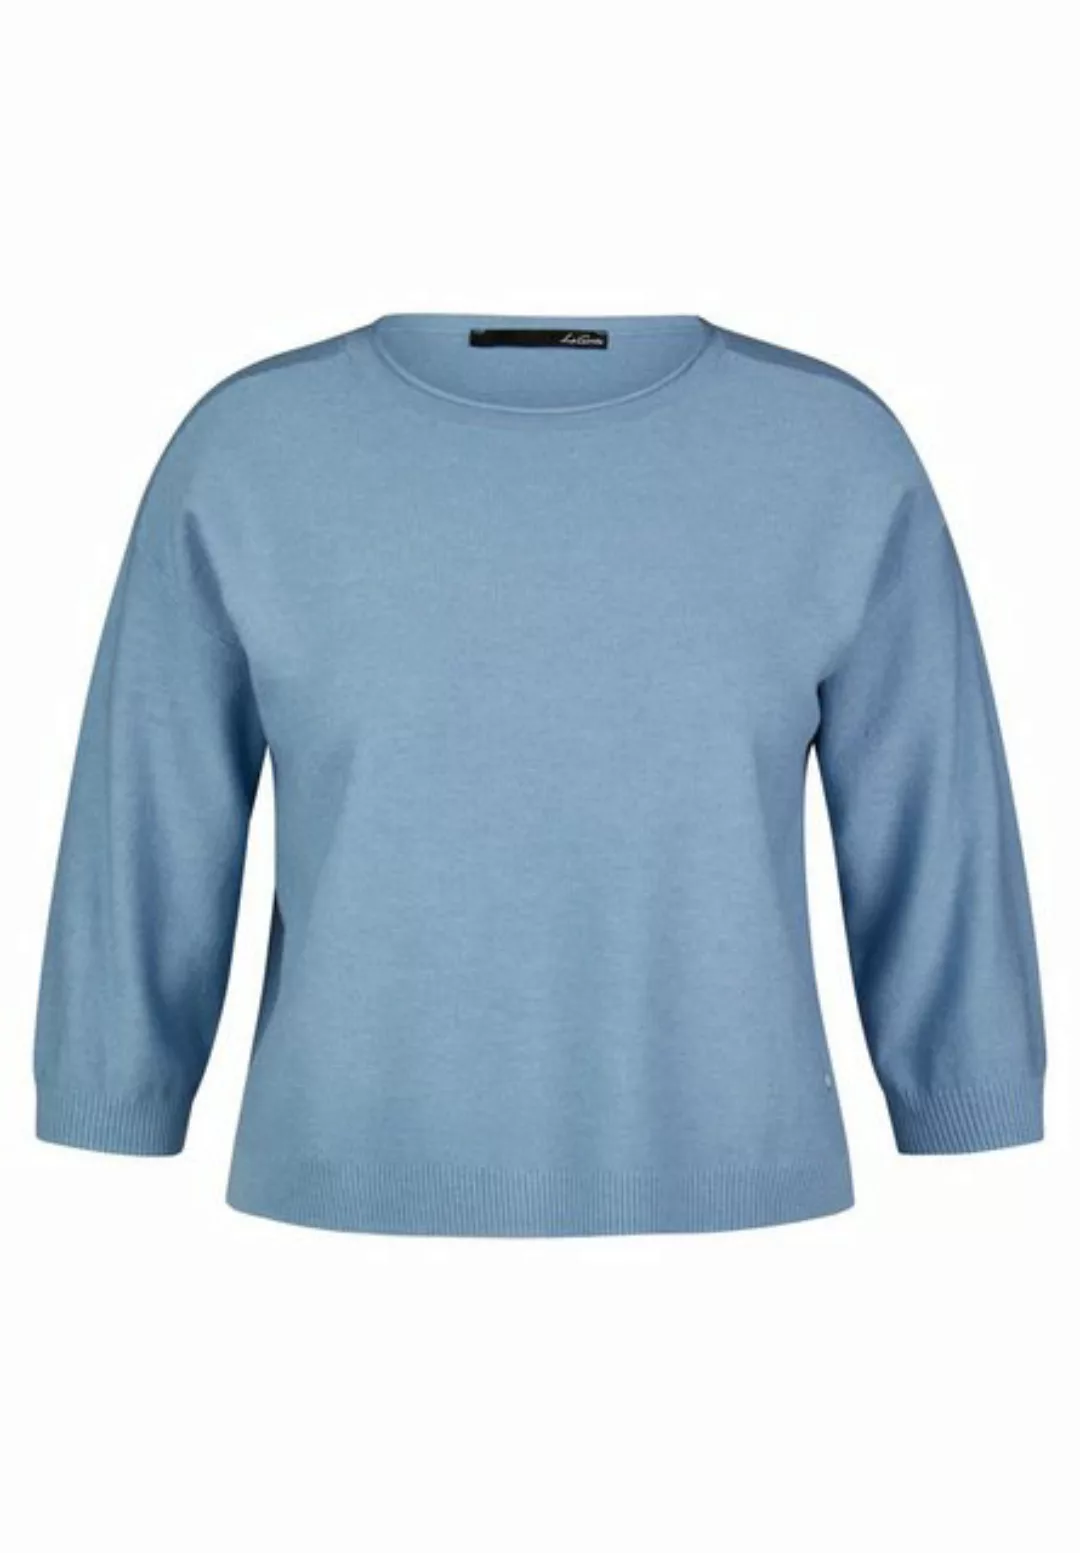 LeComte Sweatshirt Pullover, Polarblau günstig online kaufen